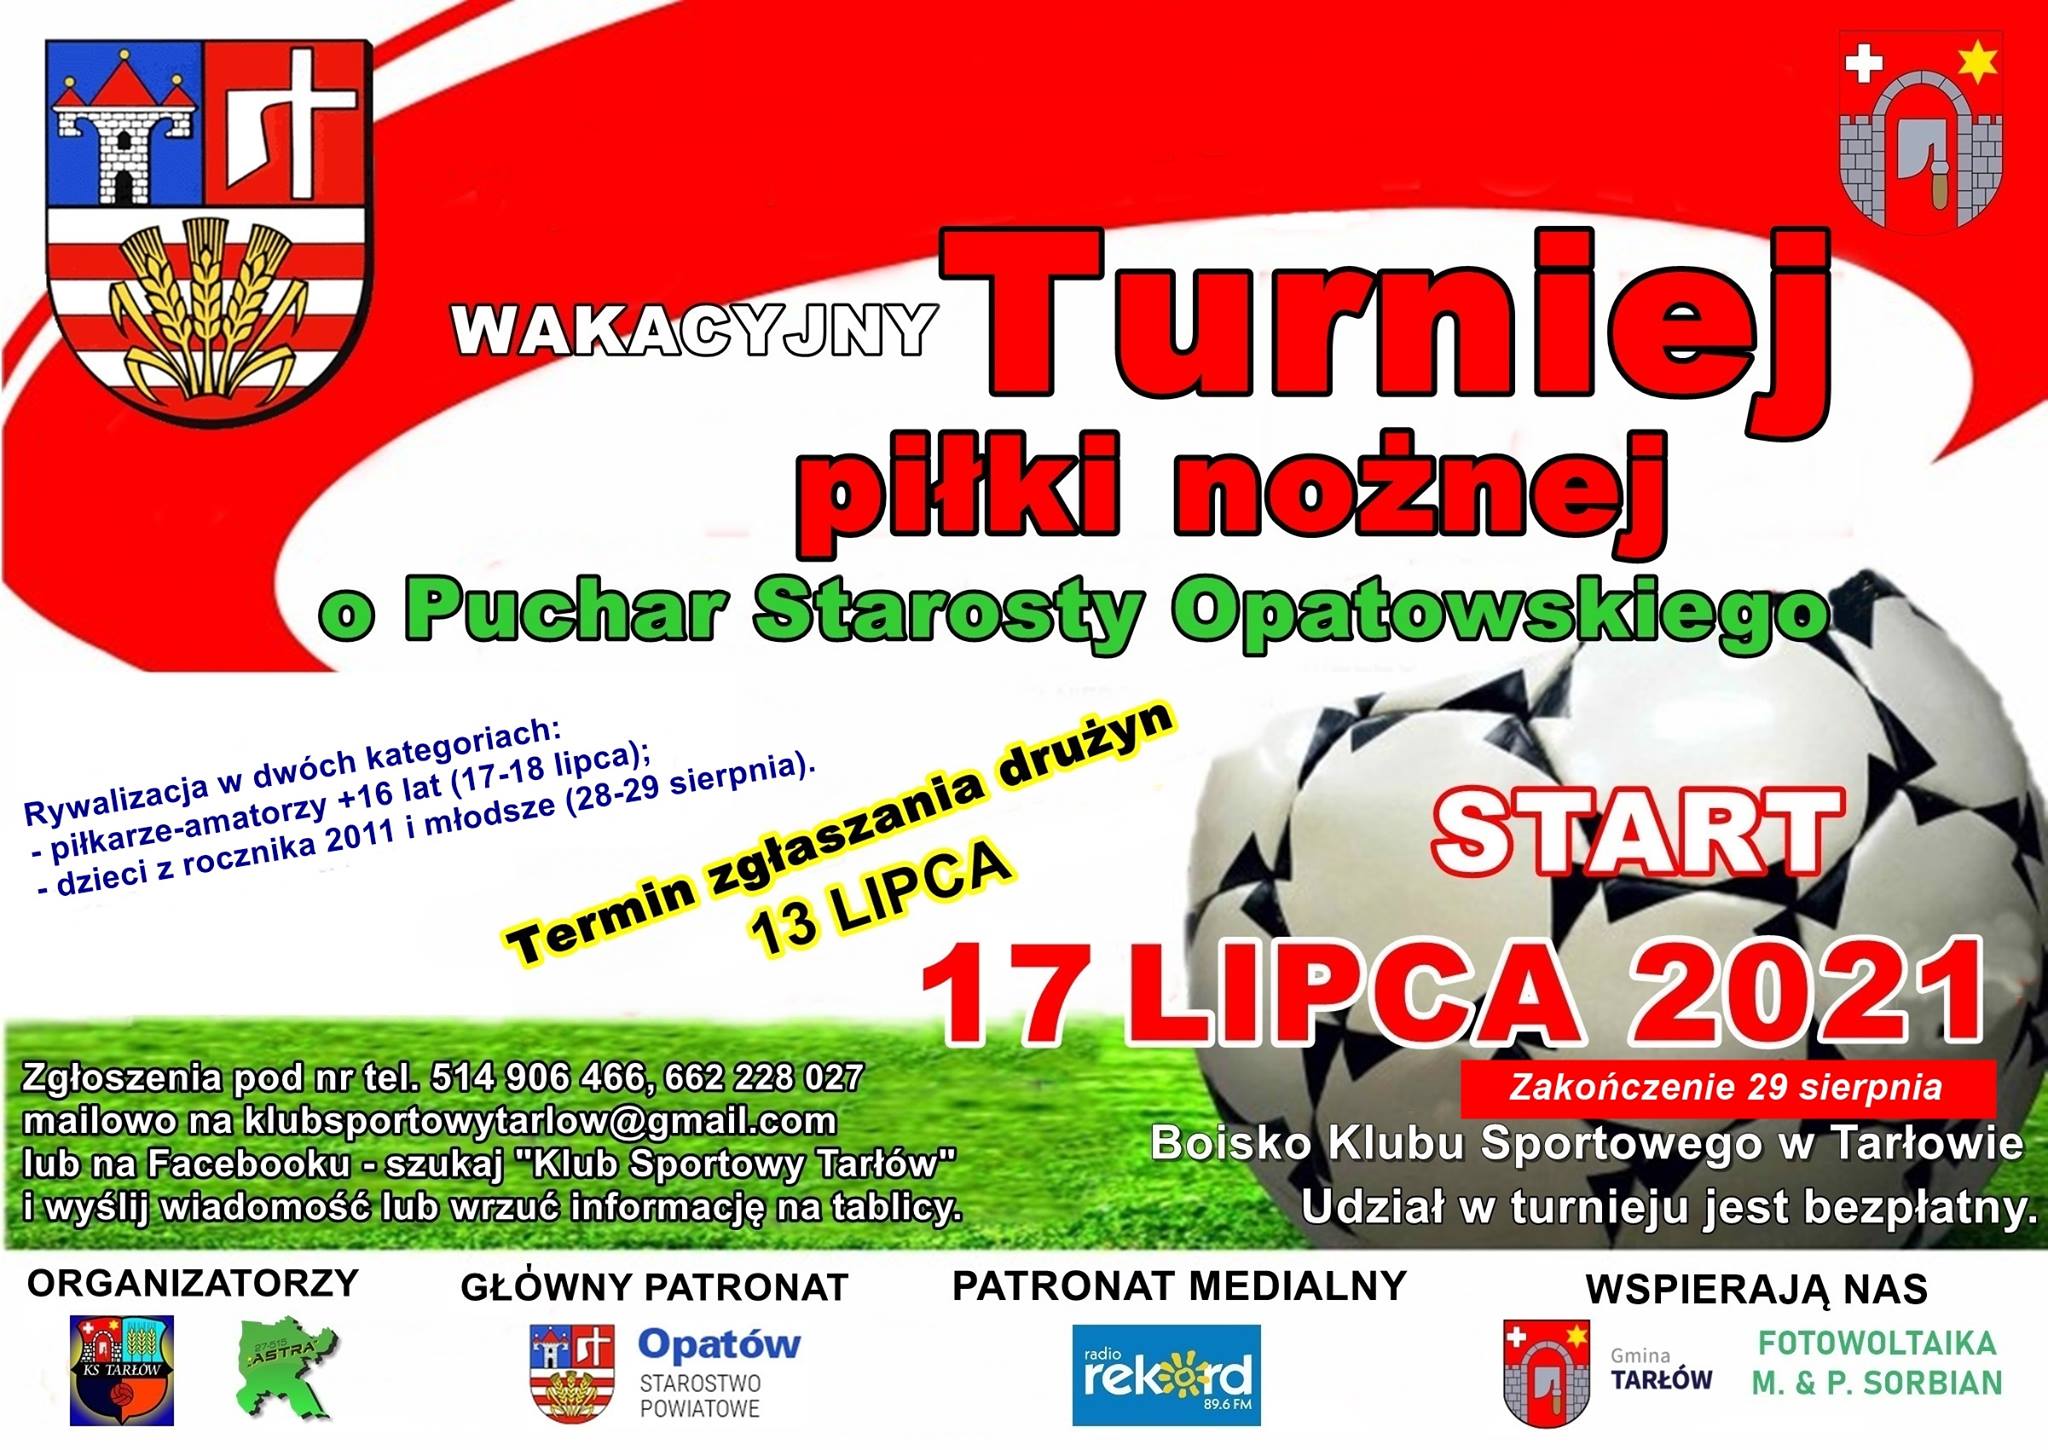 Plakat z informacjami o Wakacyjnym Turnieju o Puchar Starosty Opatowskiego